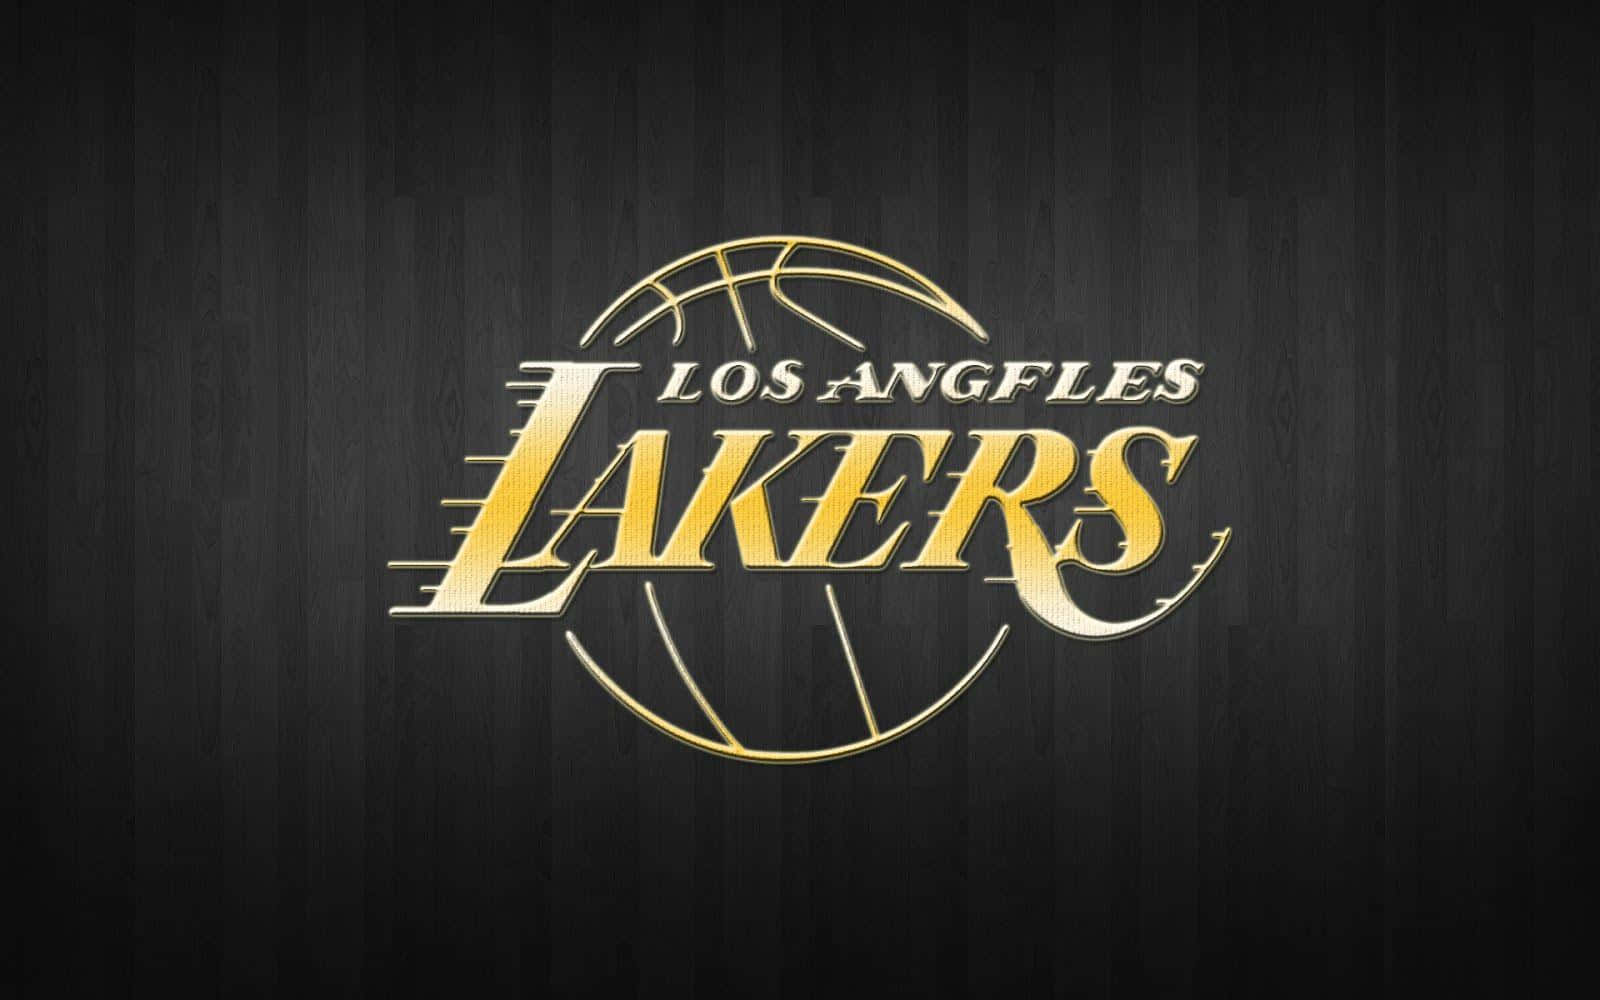 Ilsogno Dei Lakers Della Vittoria È Vivo E Ben Presente Allo Staples Center.